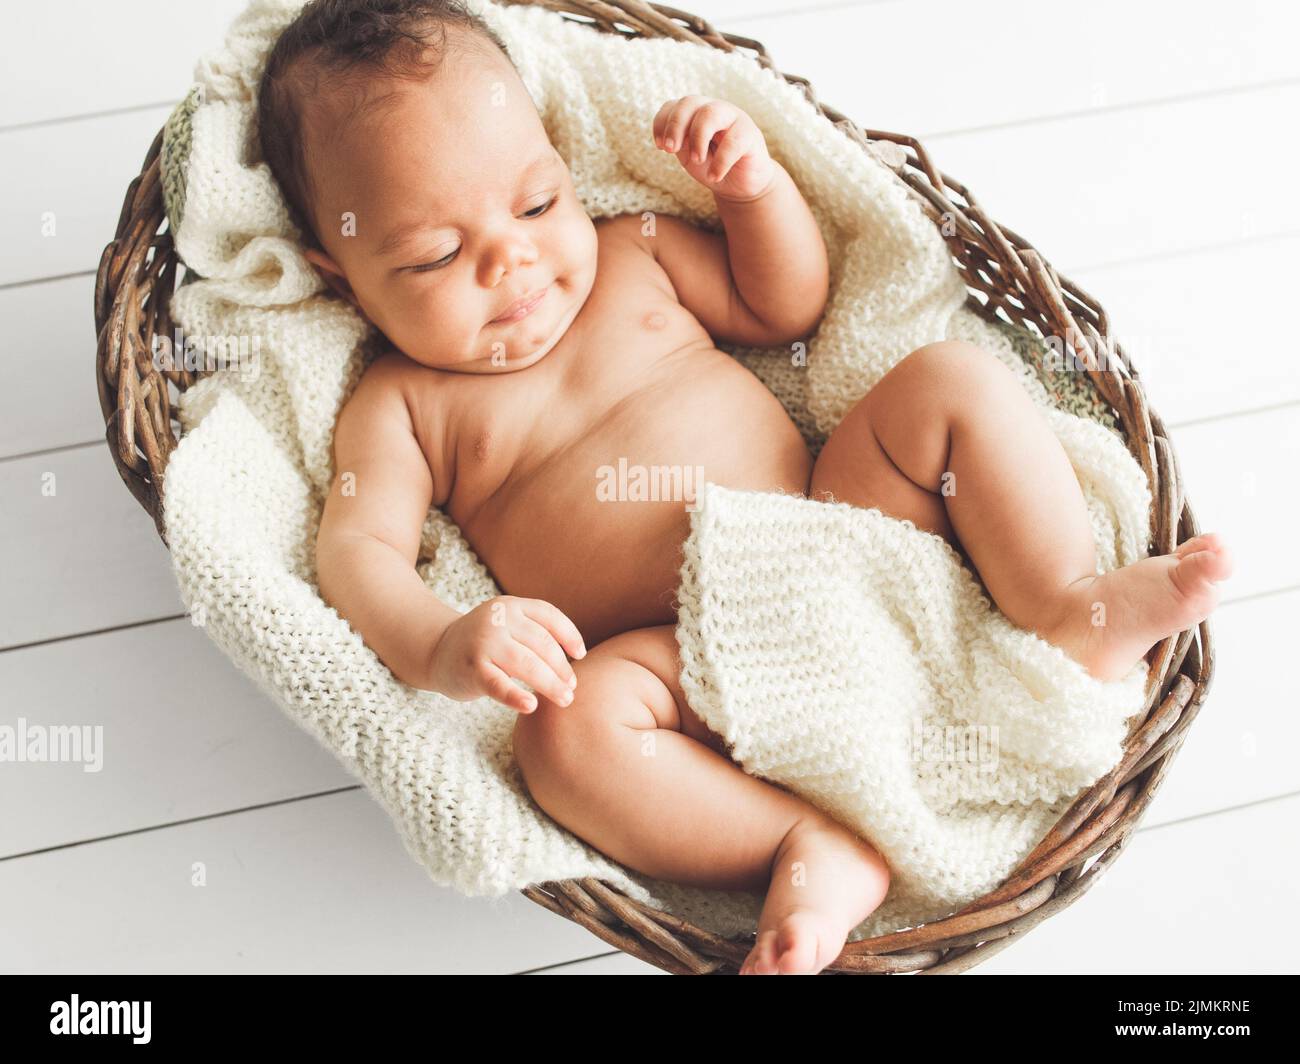 la tenerezza della bellezza del neonato la purezza innocenza Foto Stock